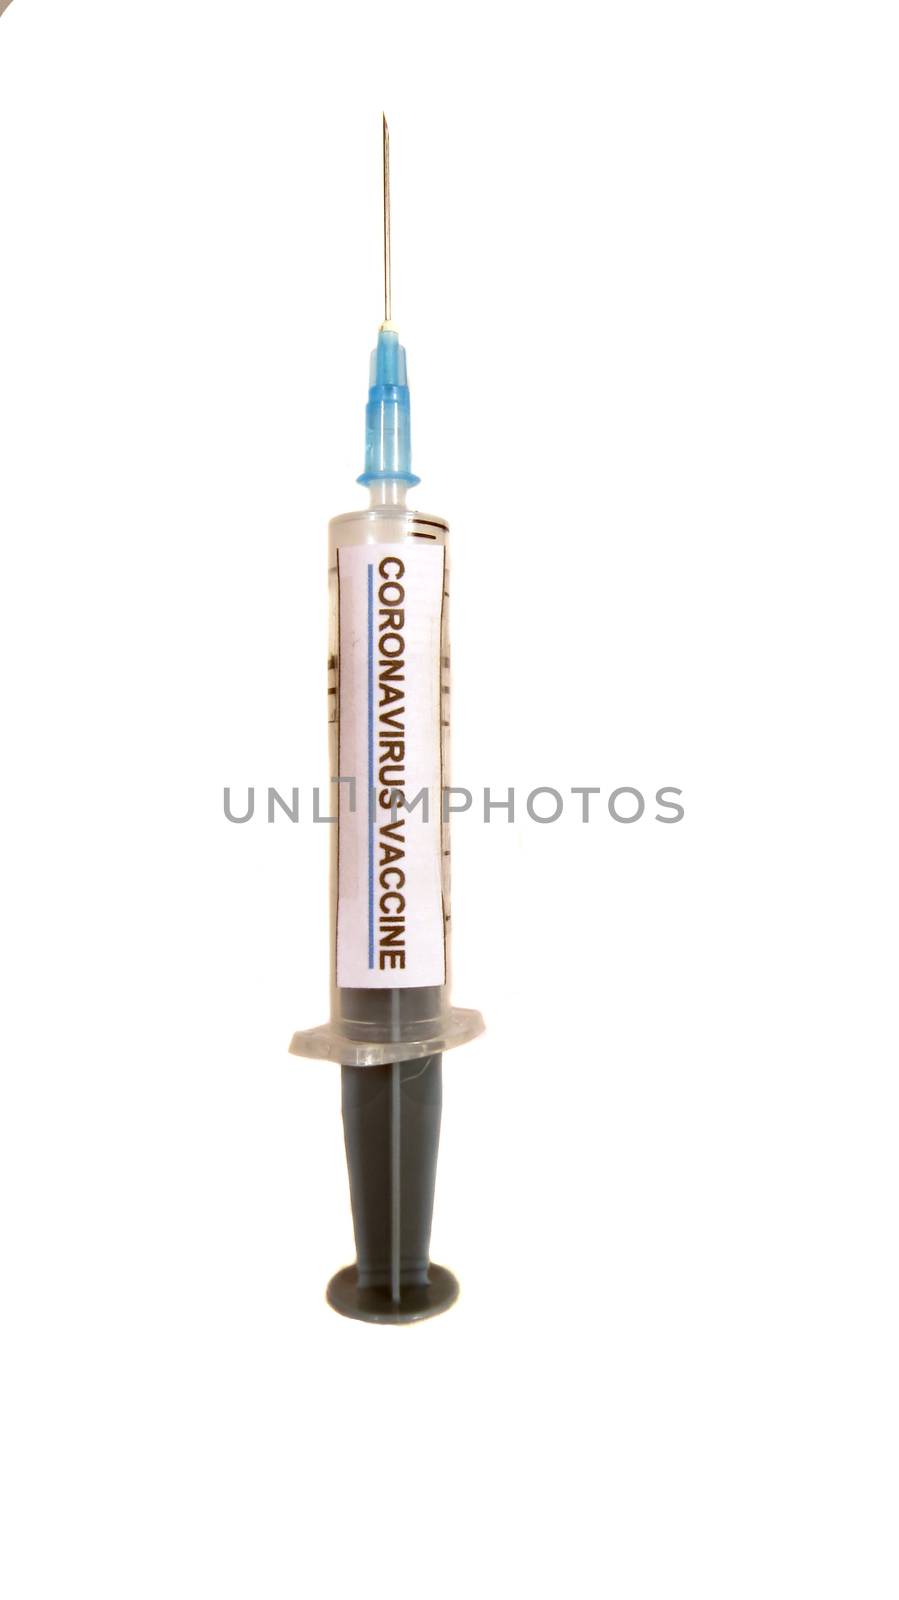 A corona virus vaccine injection syringe, on white studio background.